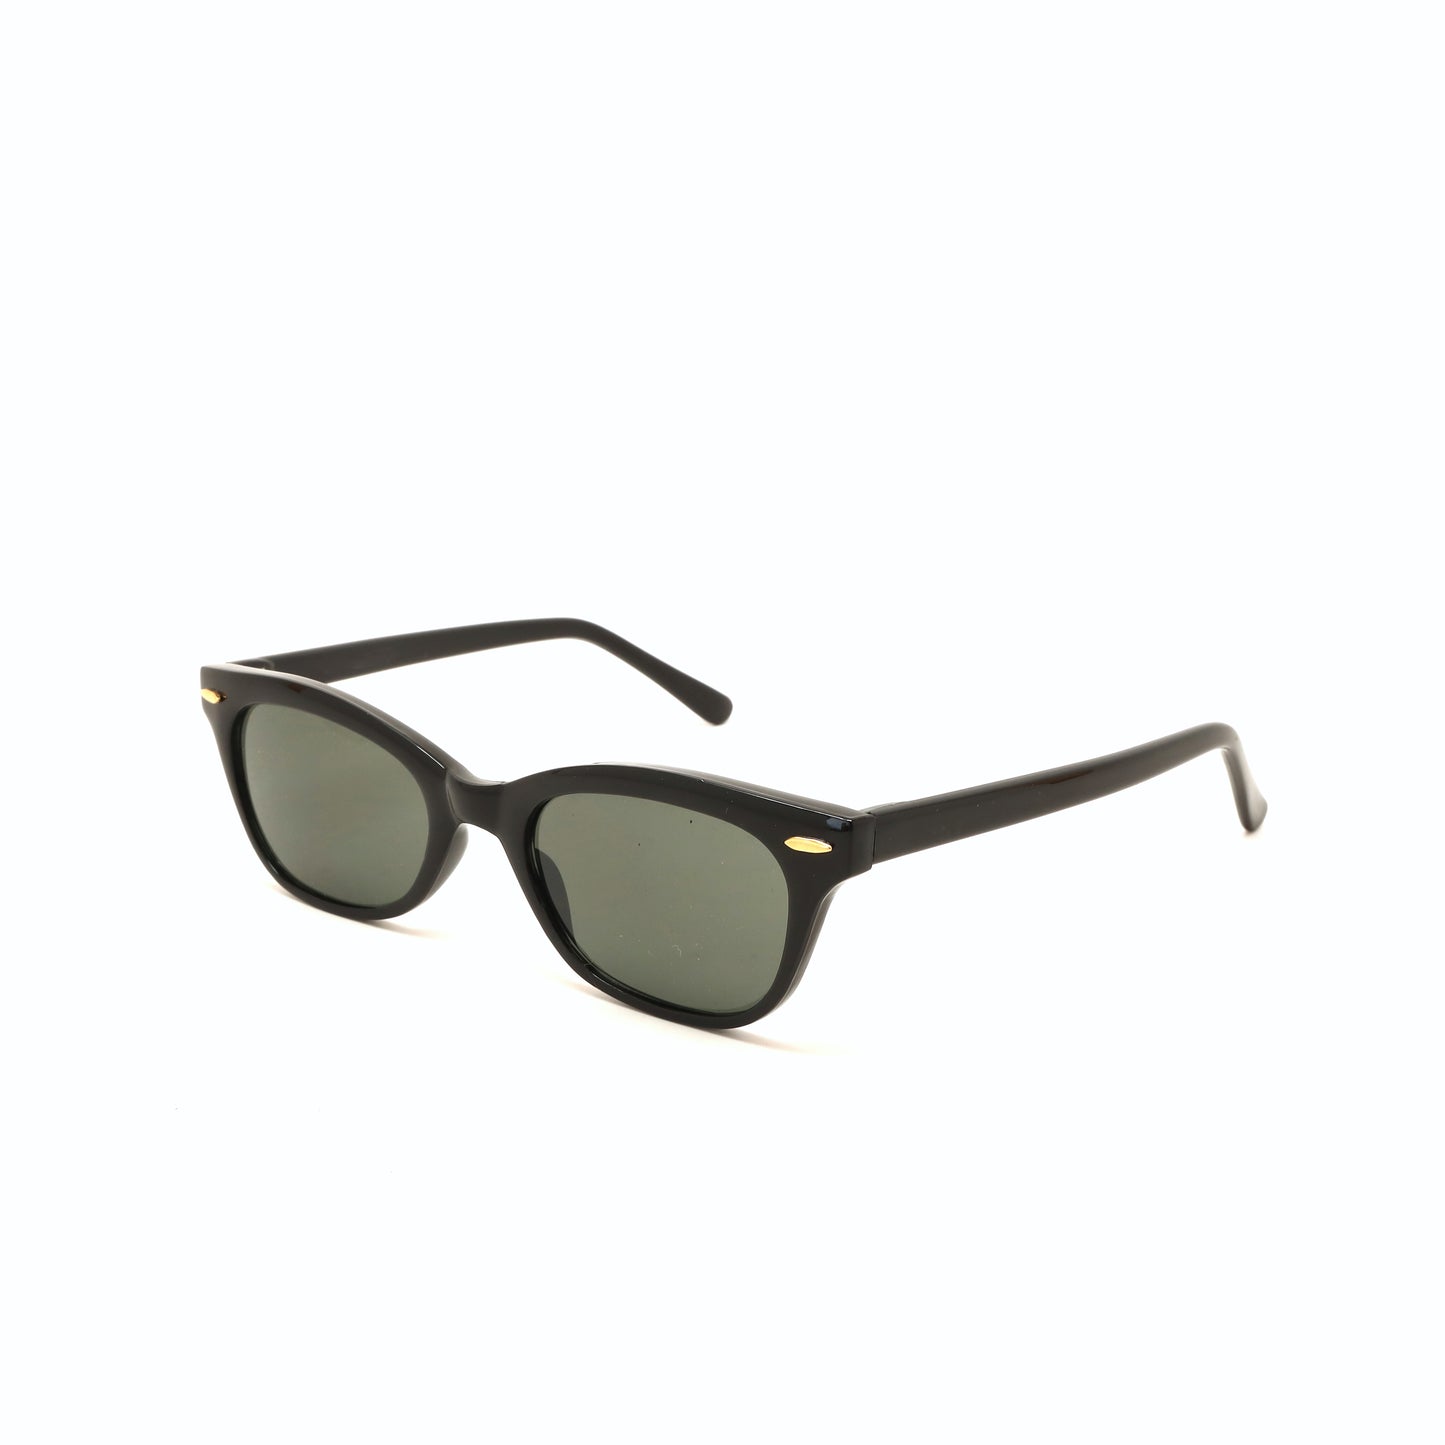 Vintage 90s Hornrimmed Style Wayfarer Sunglasses - Black